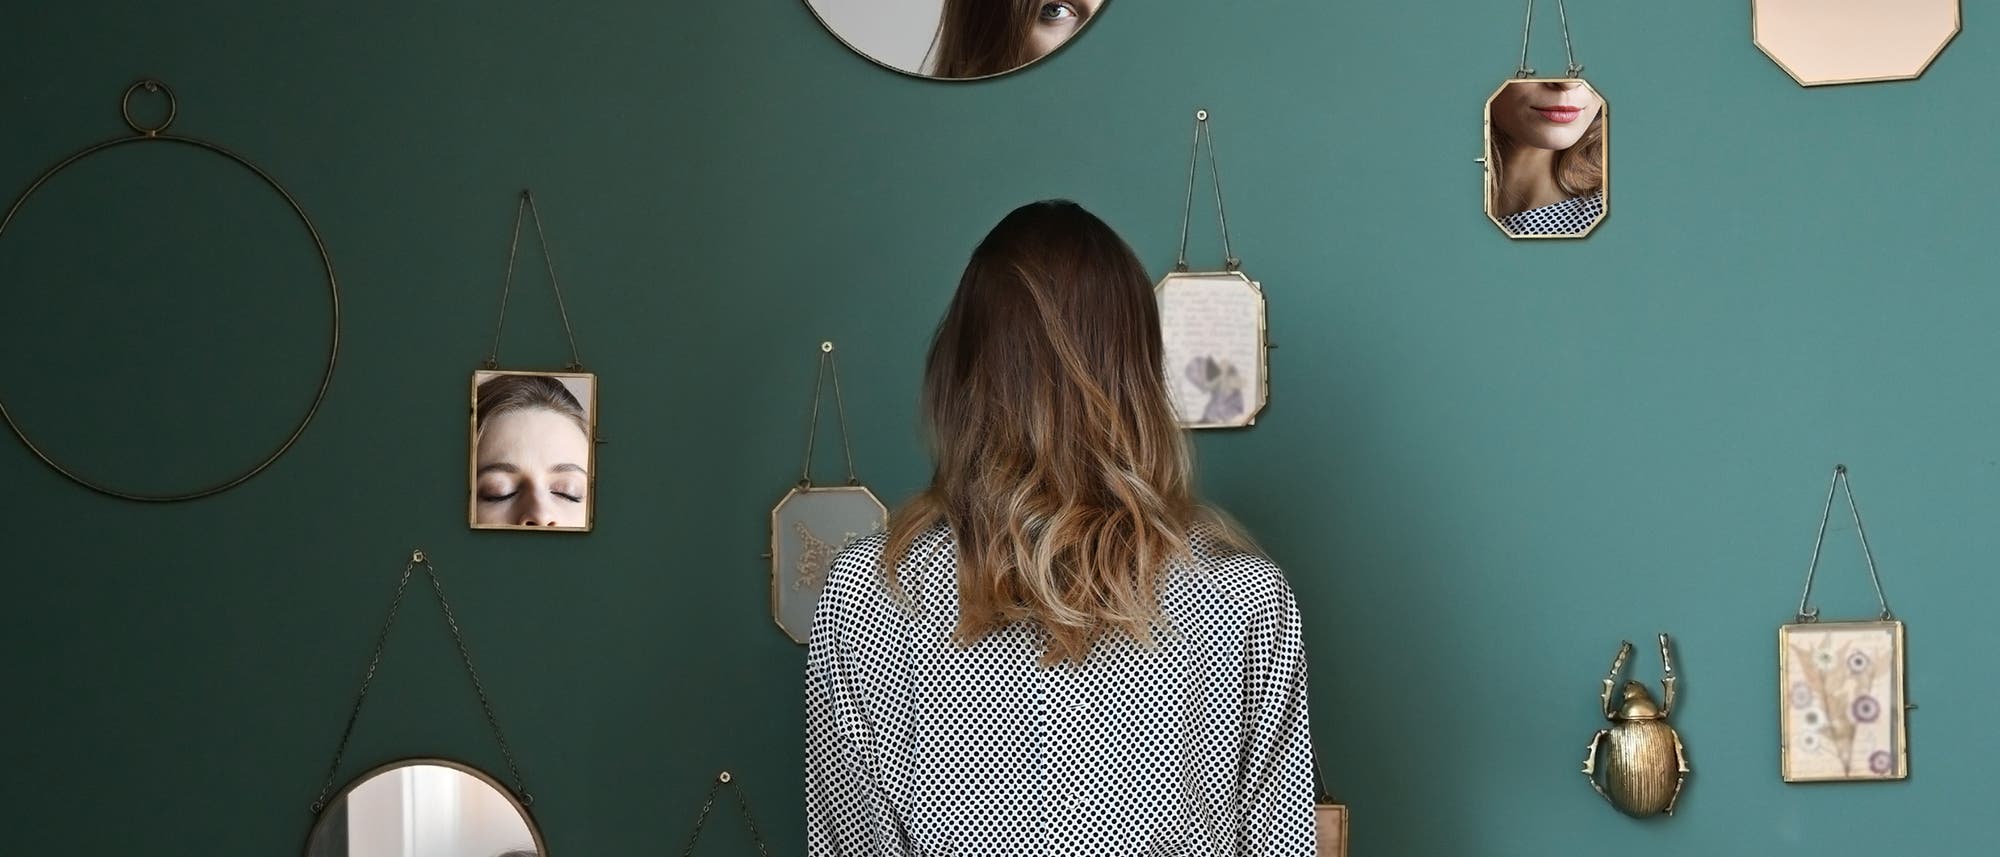 Frau von hinten, an der Wand viele verschiedene Spiegel, in denen Teile ihres Gesichts zu sehen sind